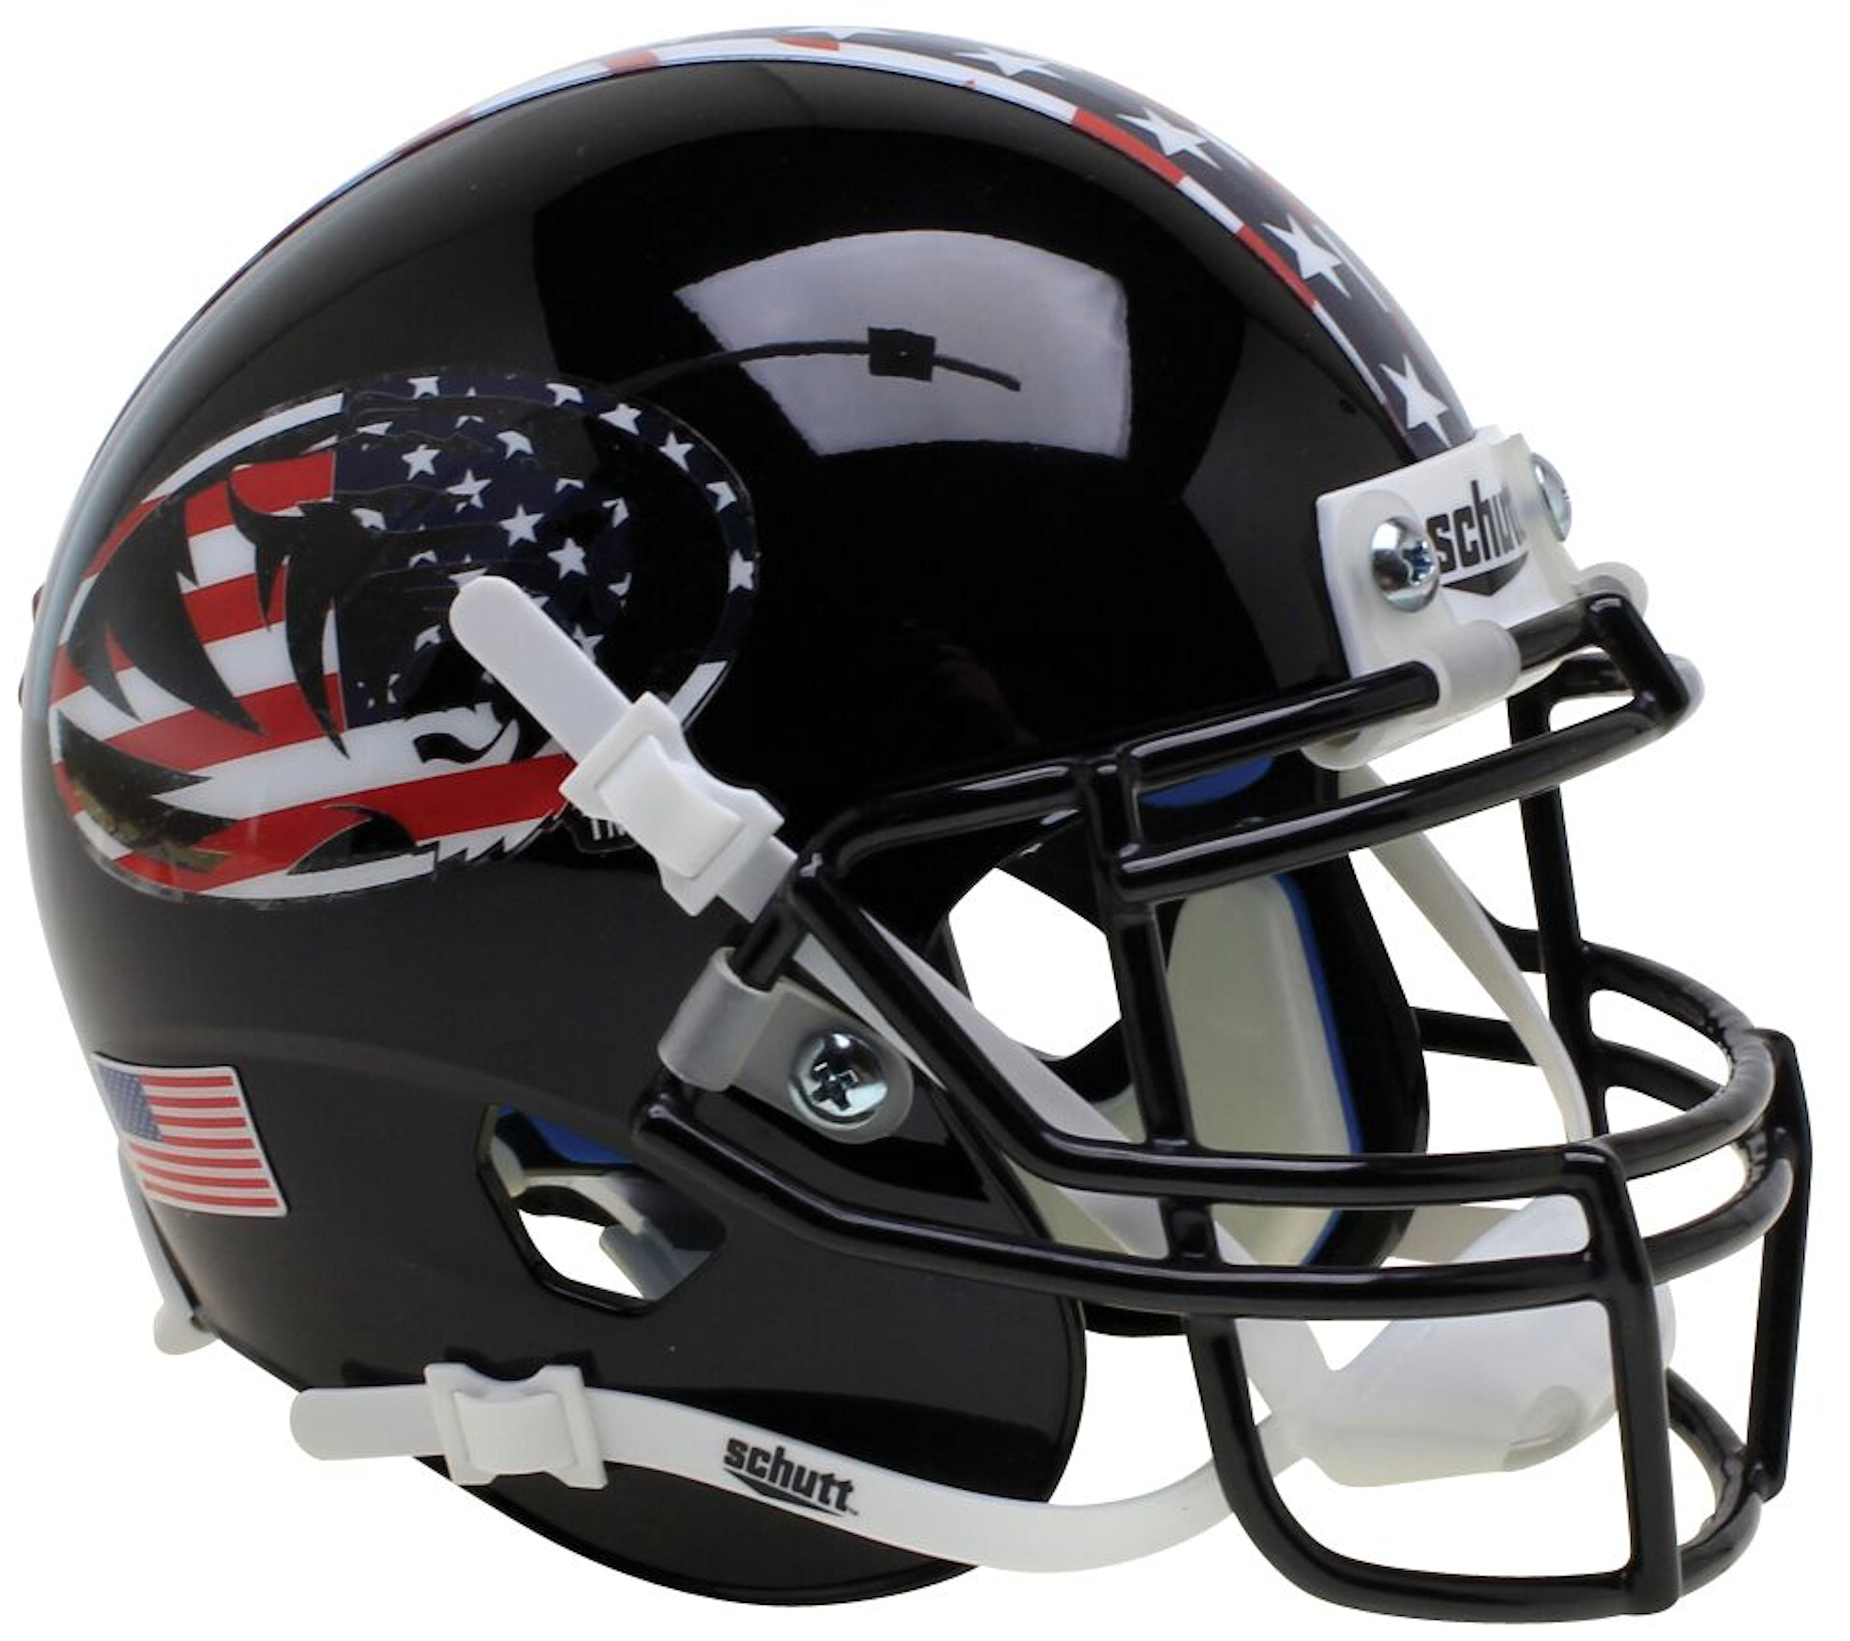 Missouri Tigers Authentic College XP Football Helmet Schutt <B>Black Patriot Tiger</B>